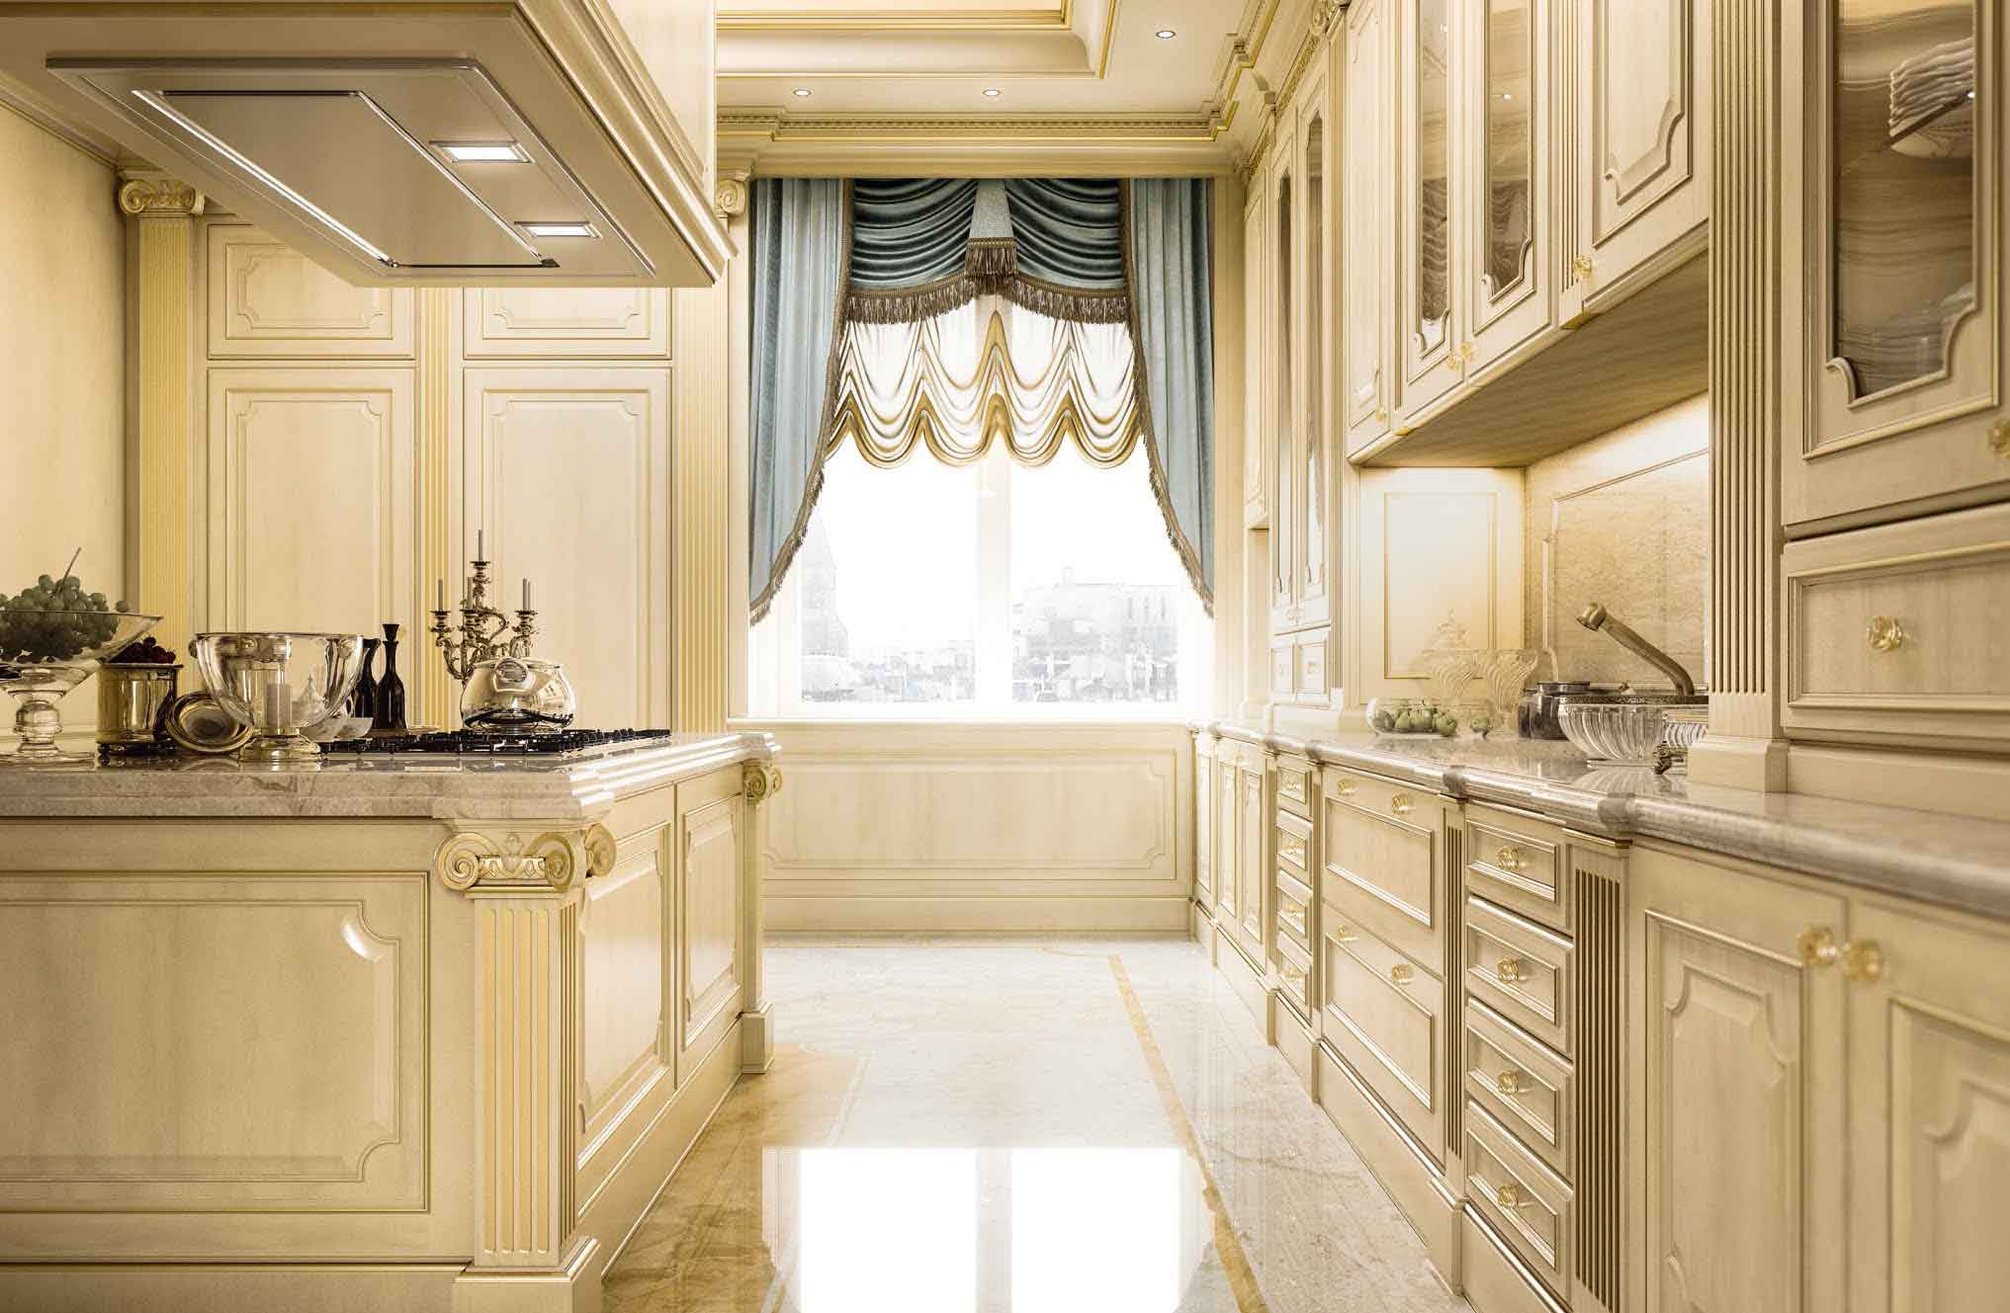 шторы на кухне в классическом интерьере